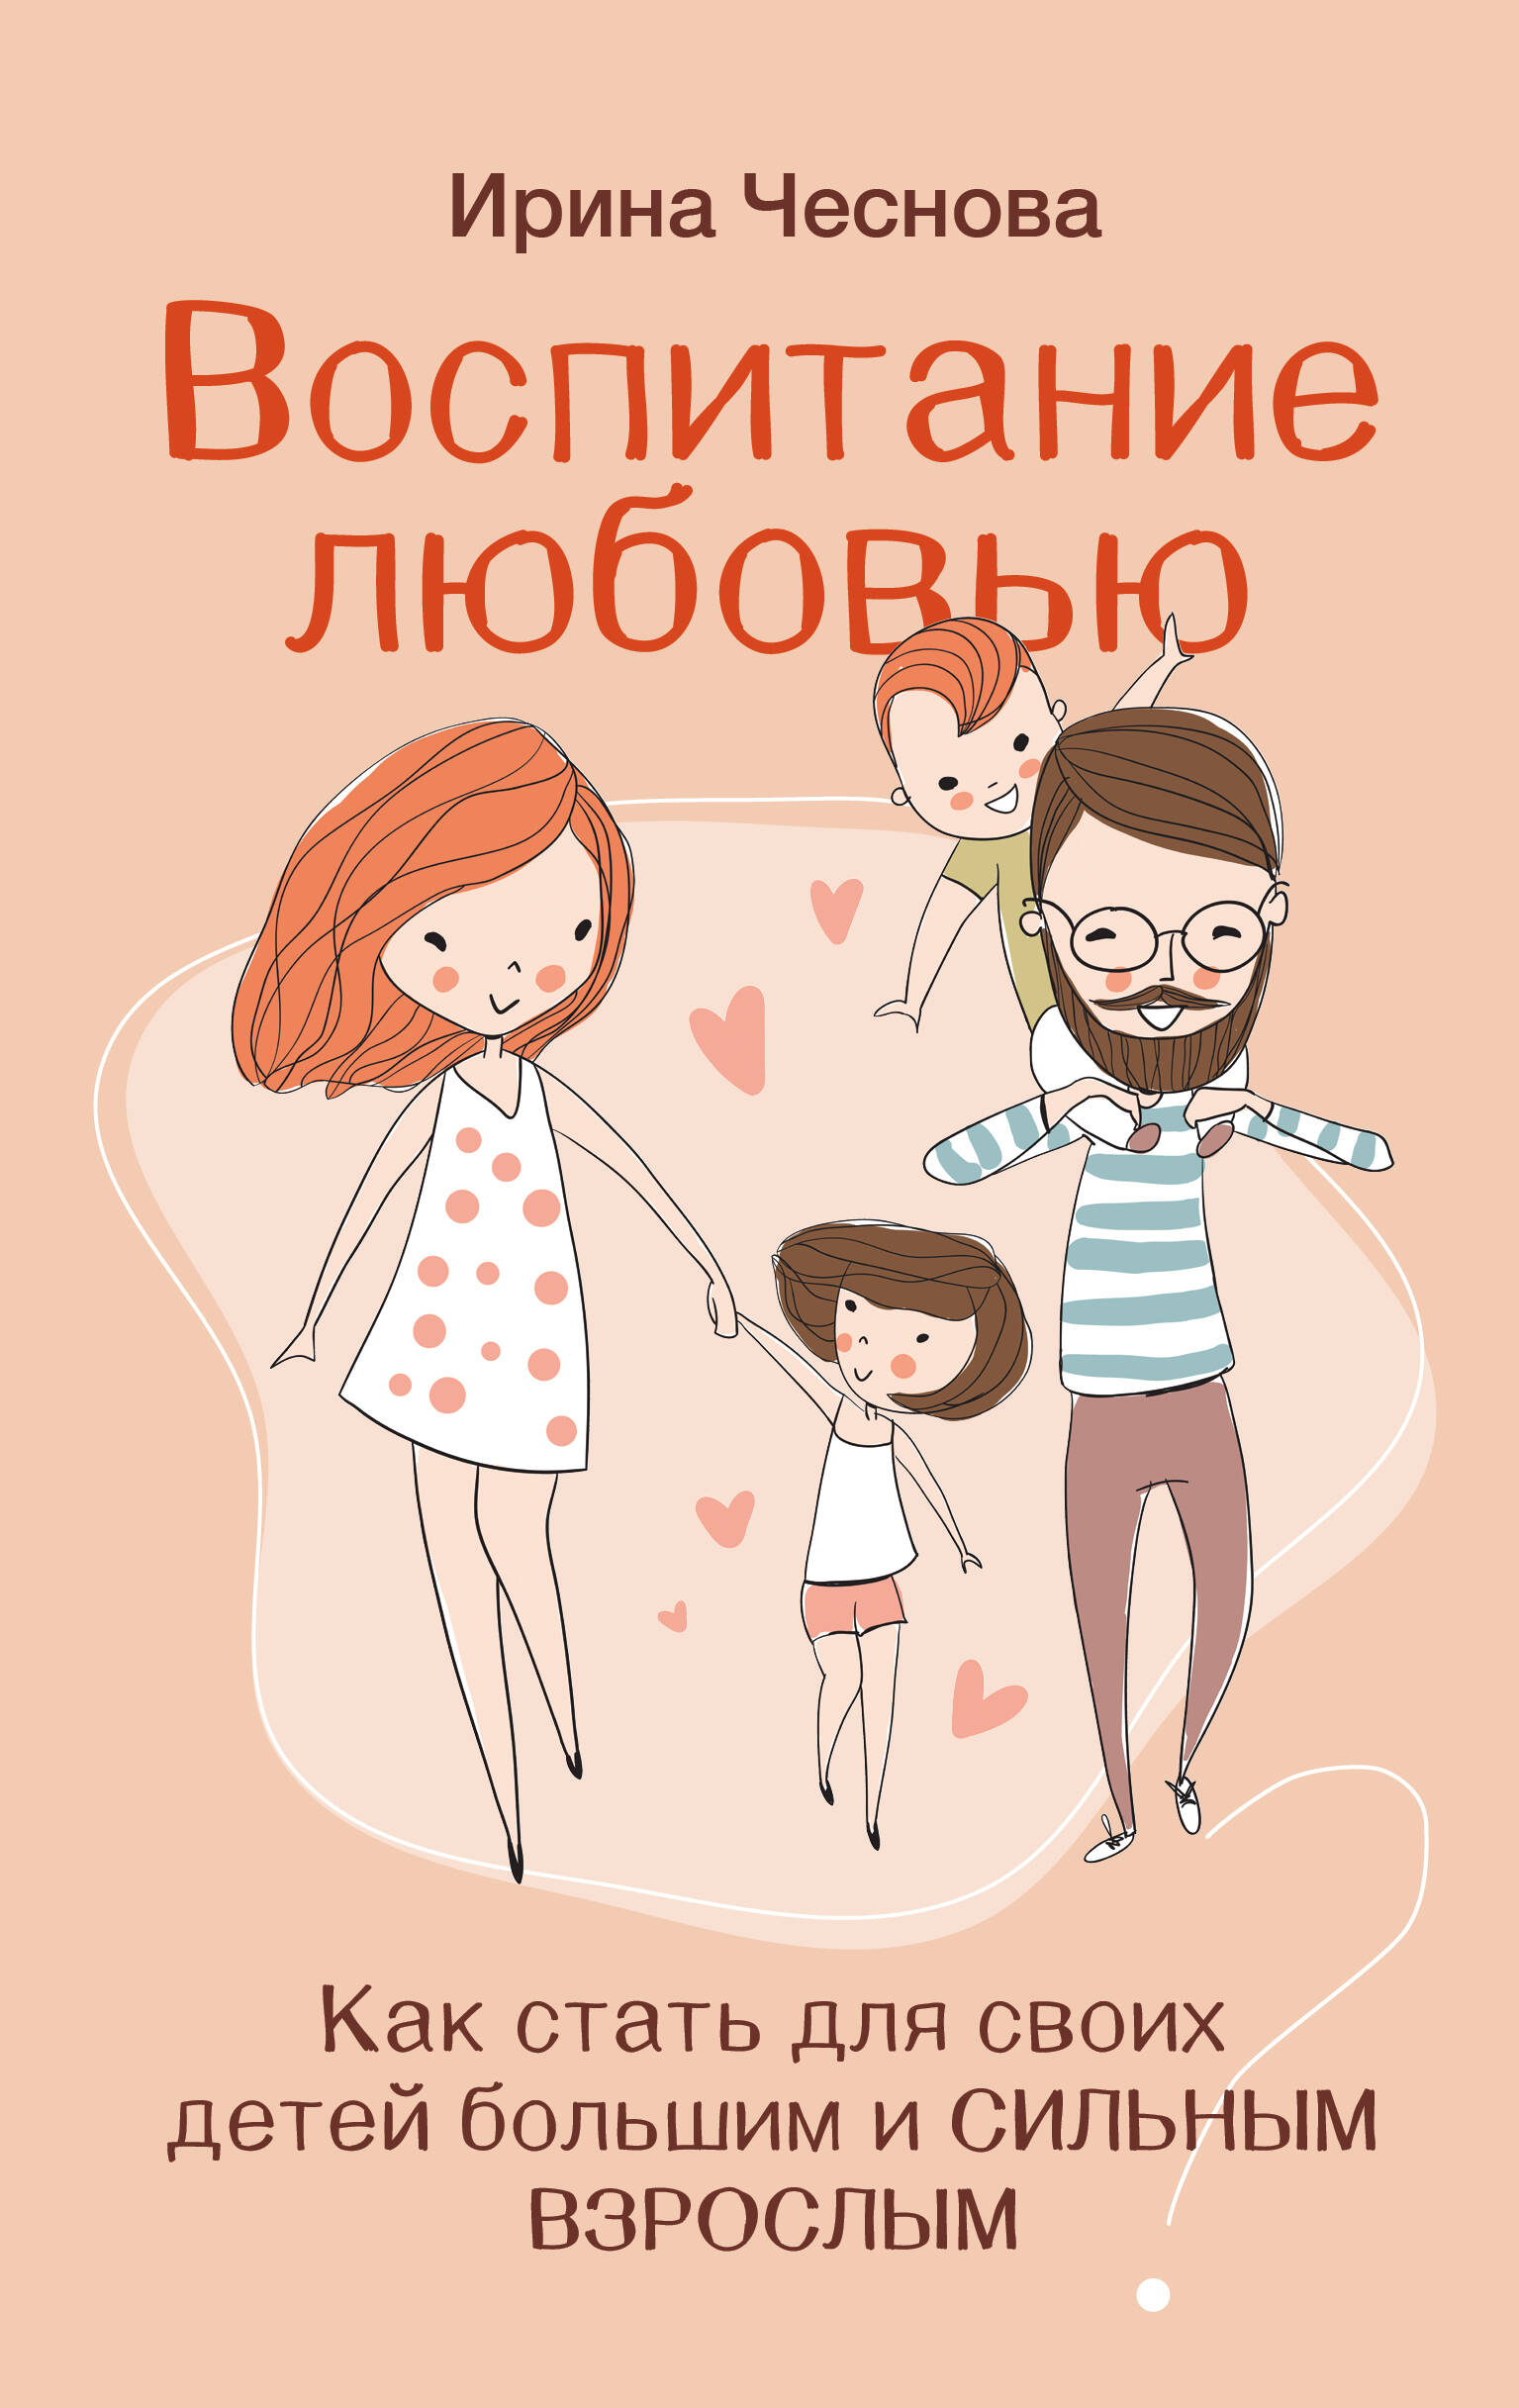 Чеснова Ирина Евгеньевна Воспитание любовью. Как стать для своих детей большим и сильным взрослым